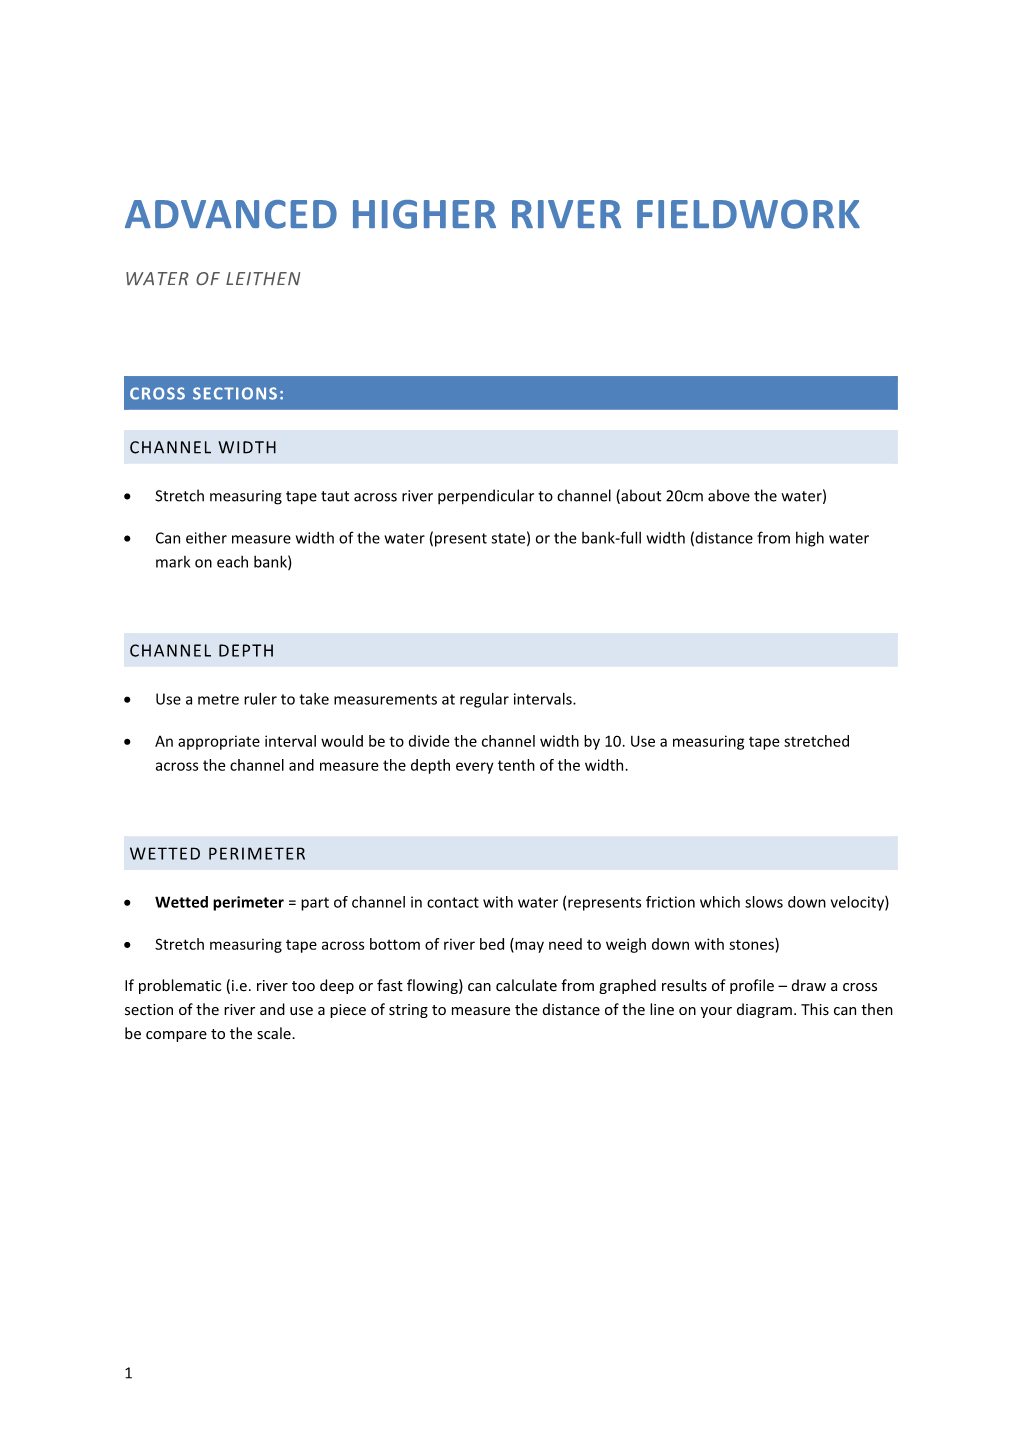 Advanced Higher River Fieldwork